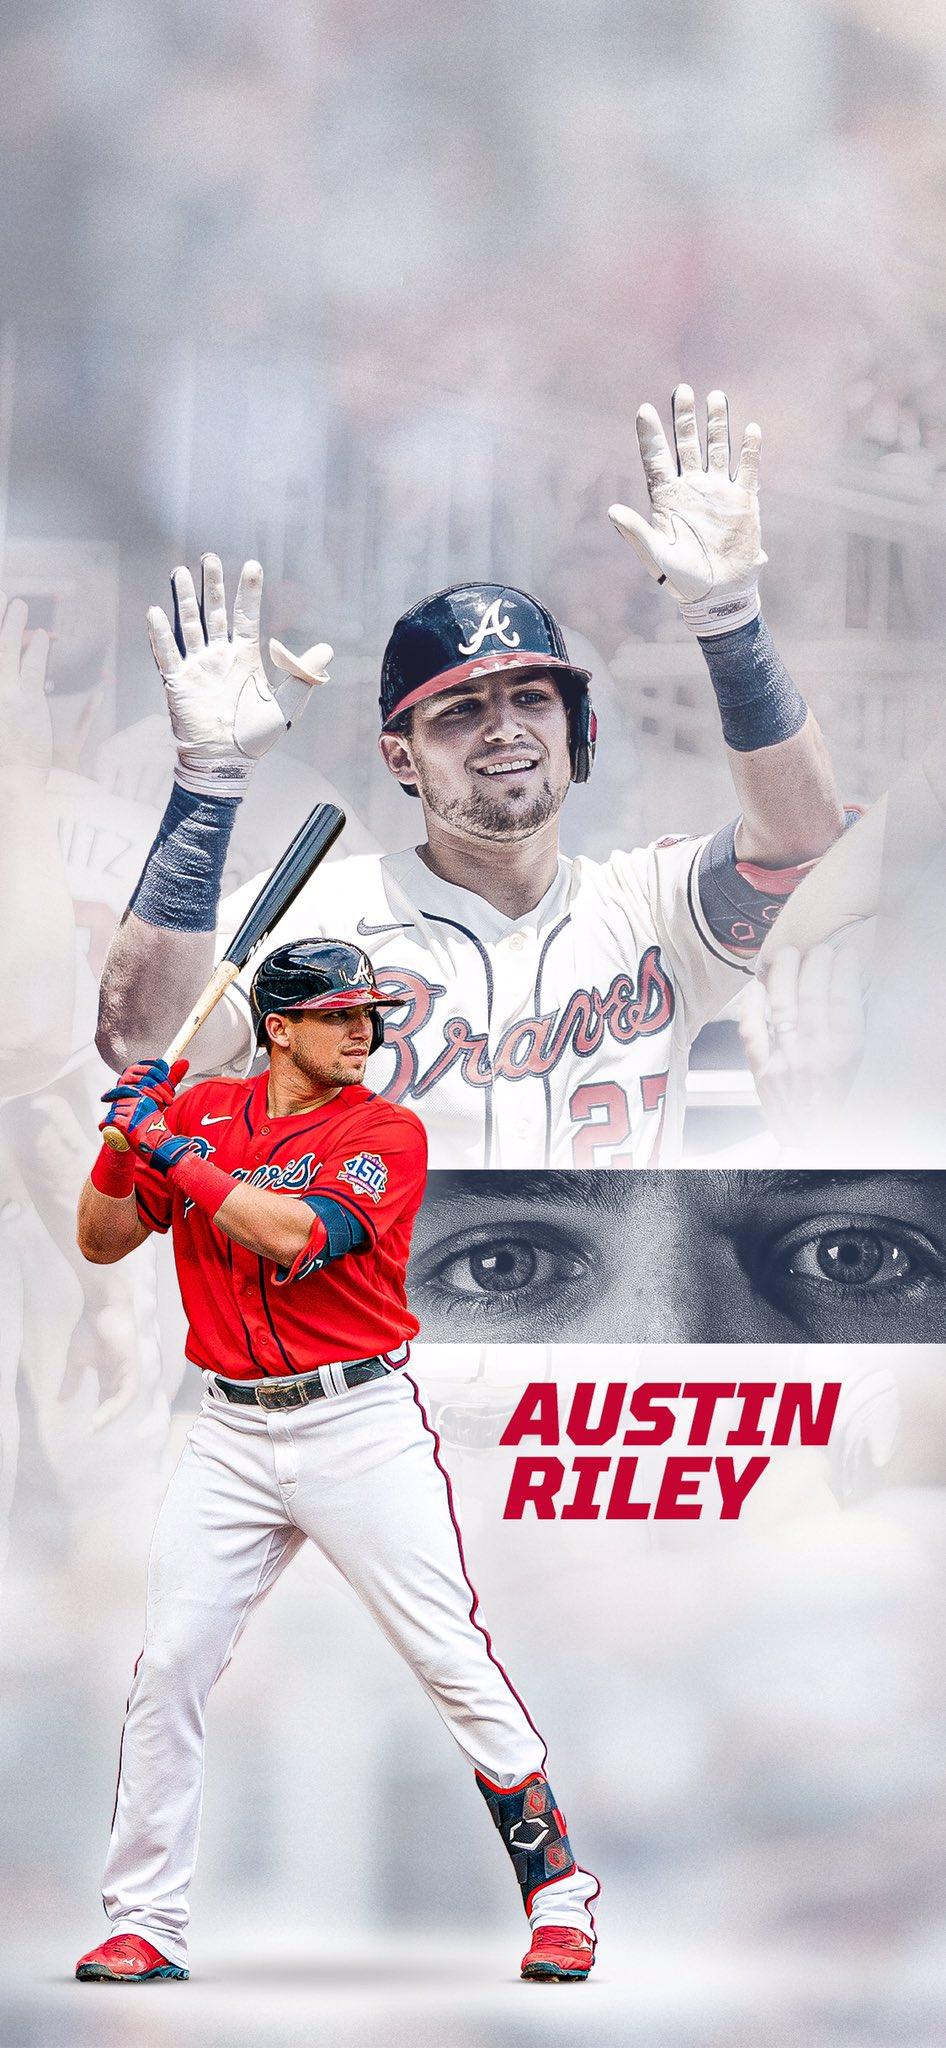 Big bonus for Southaven native Austin Riley in MLB